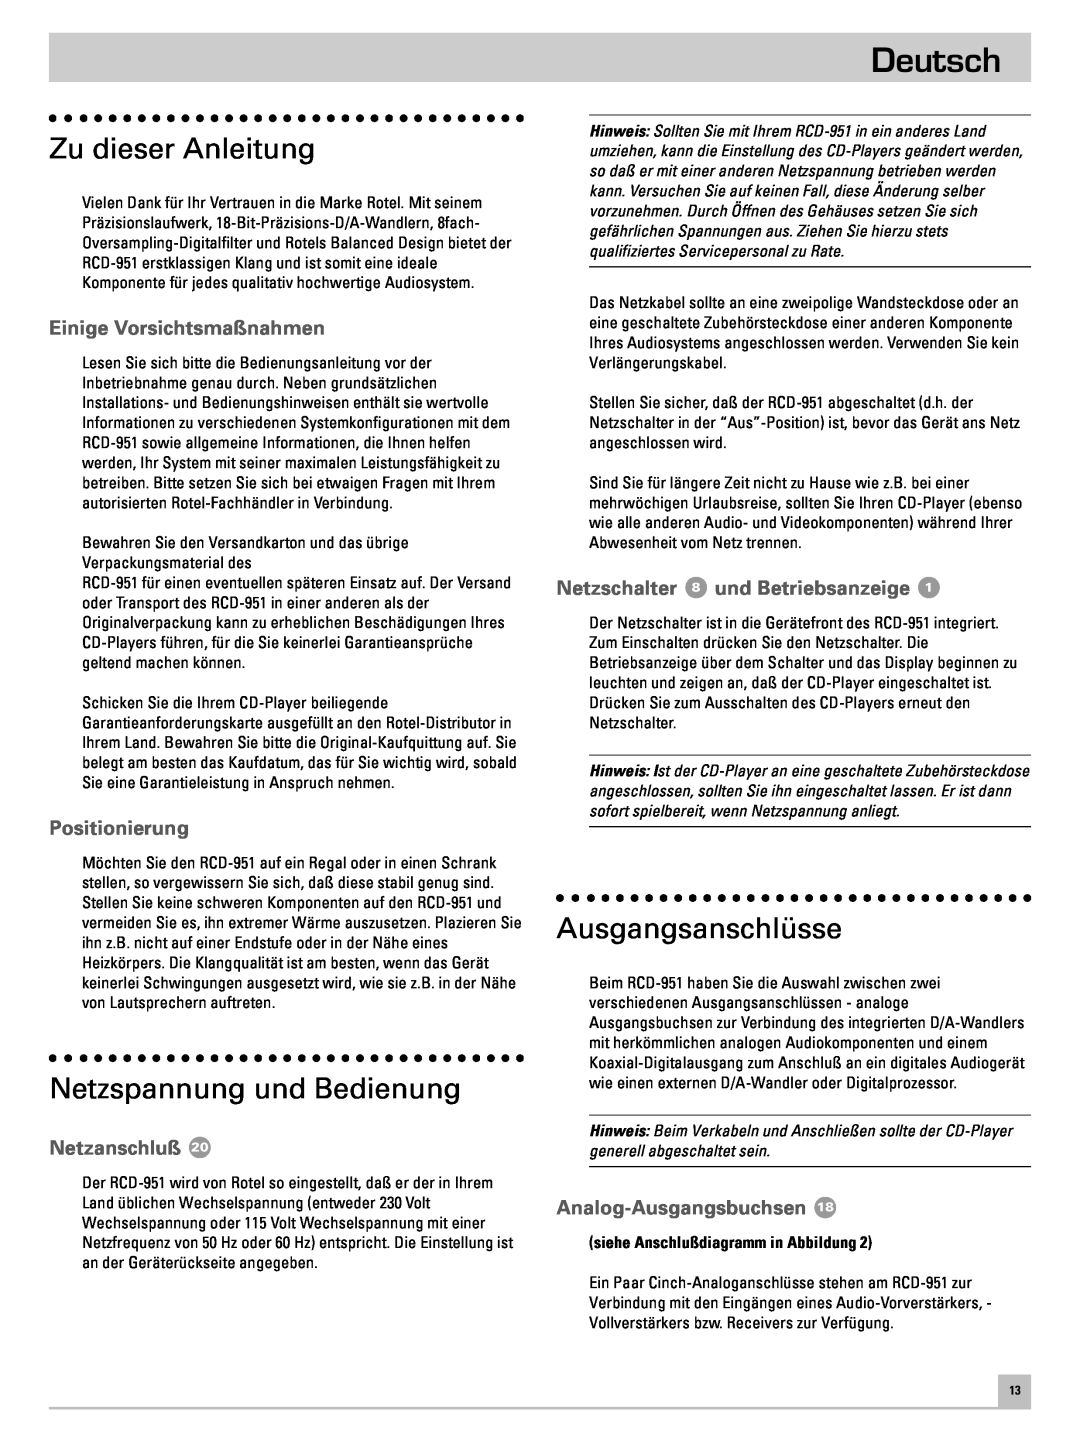 Rotel RCD-951 Deutsch, Zu dieser Anleitung, Netzspannung und Bedienung, Ausgangsanschlüsse, Einige Vorsichtsmaßnahmen 